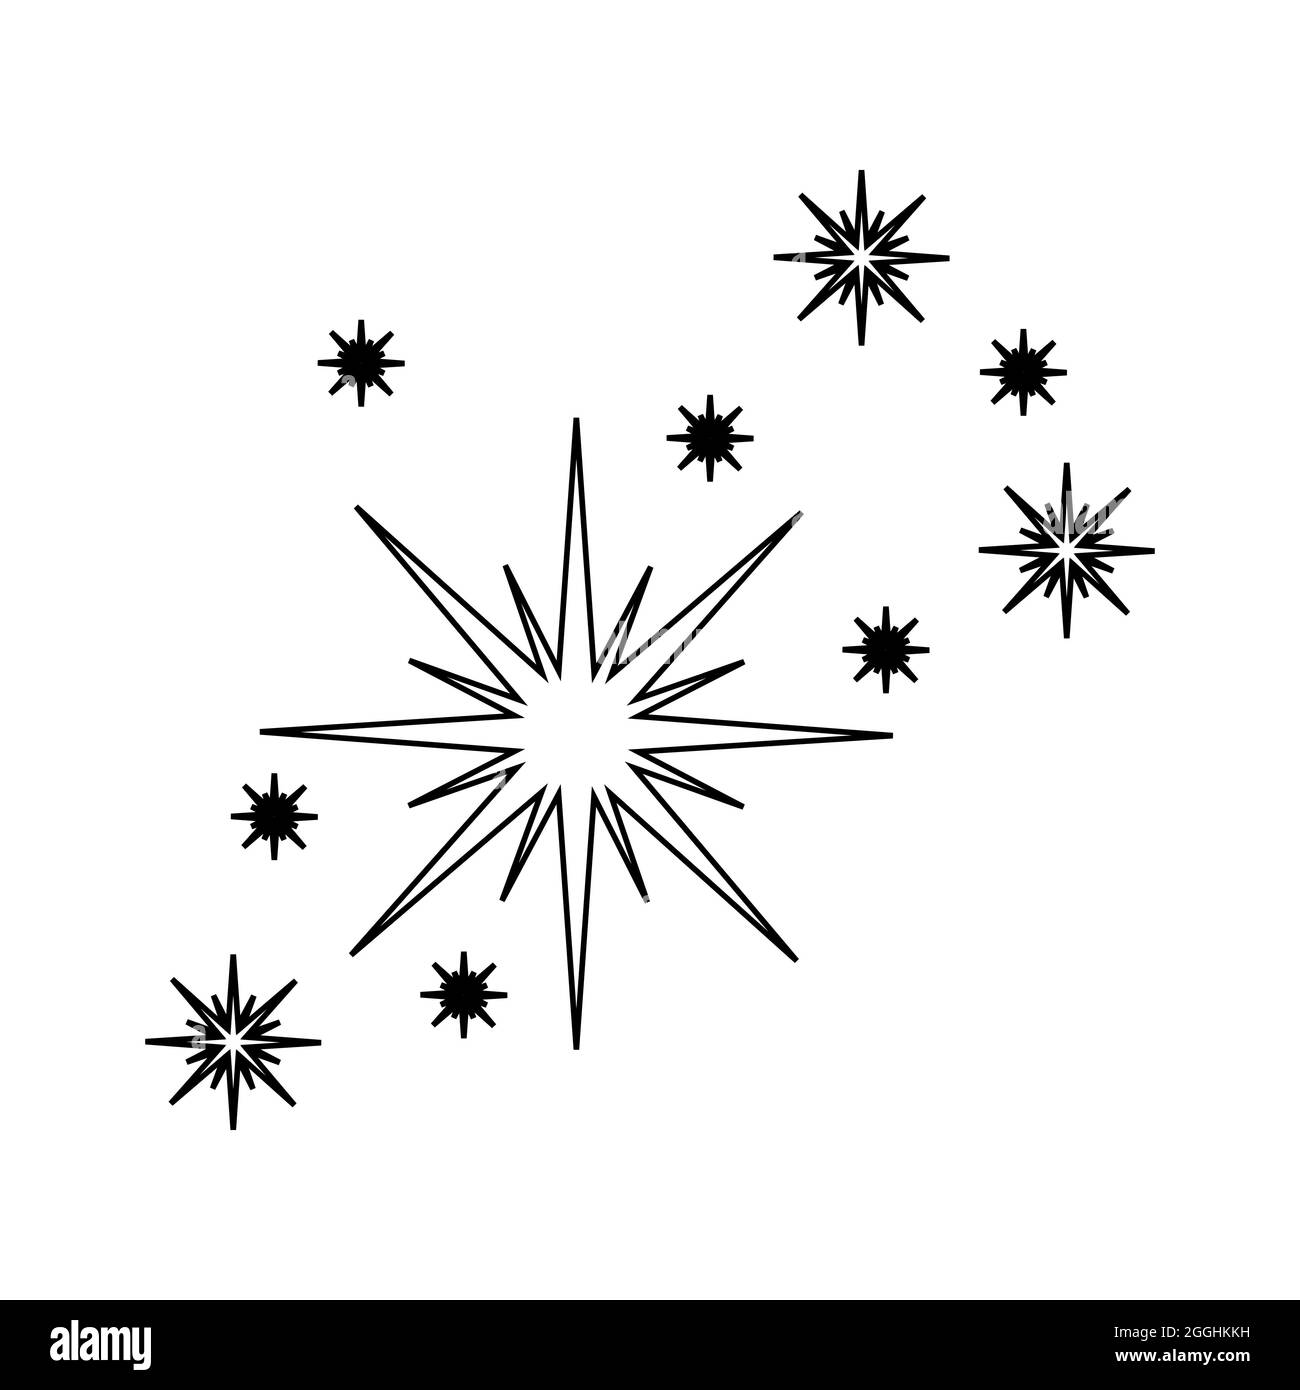 Skizzieren Sie Feuerwerk Wunderkerzen. Sternsymbol funkelt auf weißem Hintergrund isoliert. Leuchtendes Blitzsymbol. Sternlichtsäube. Lineare Vektordarstellung. Stock Vektor